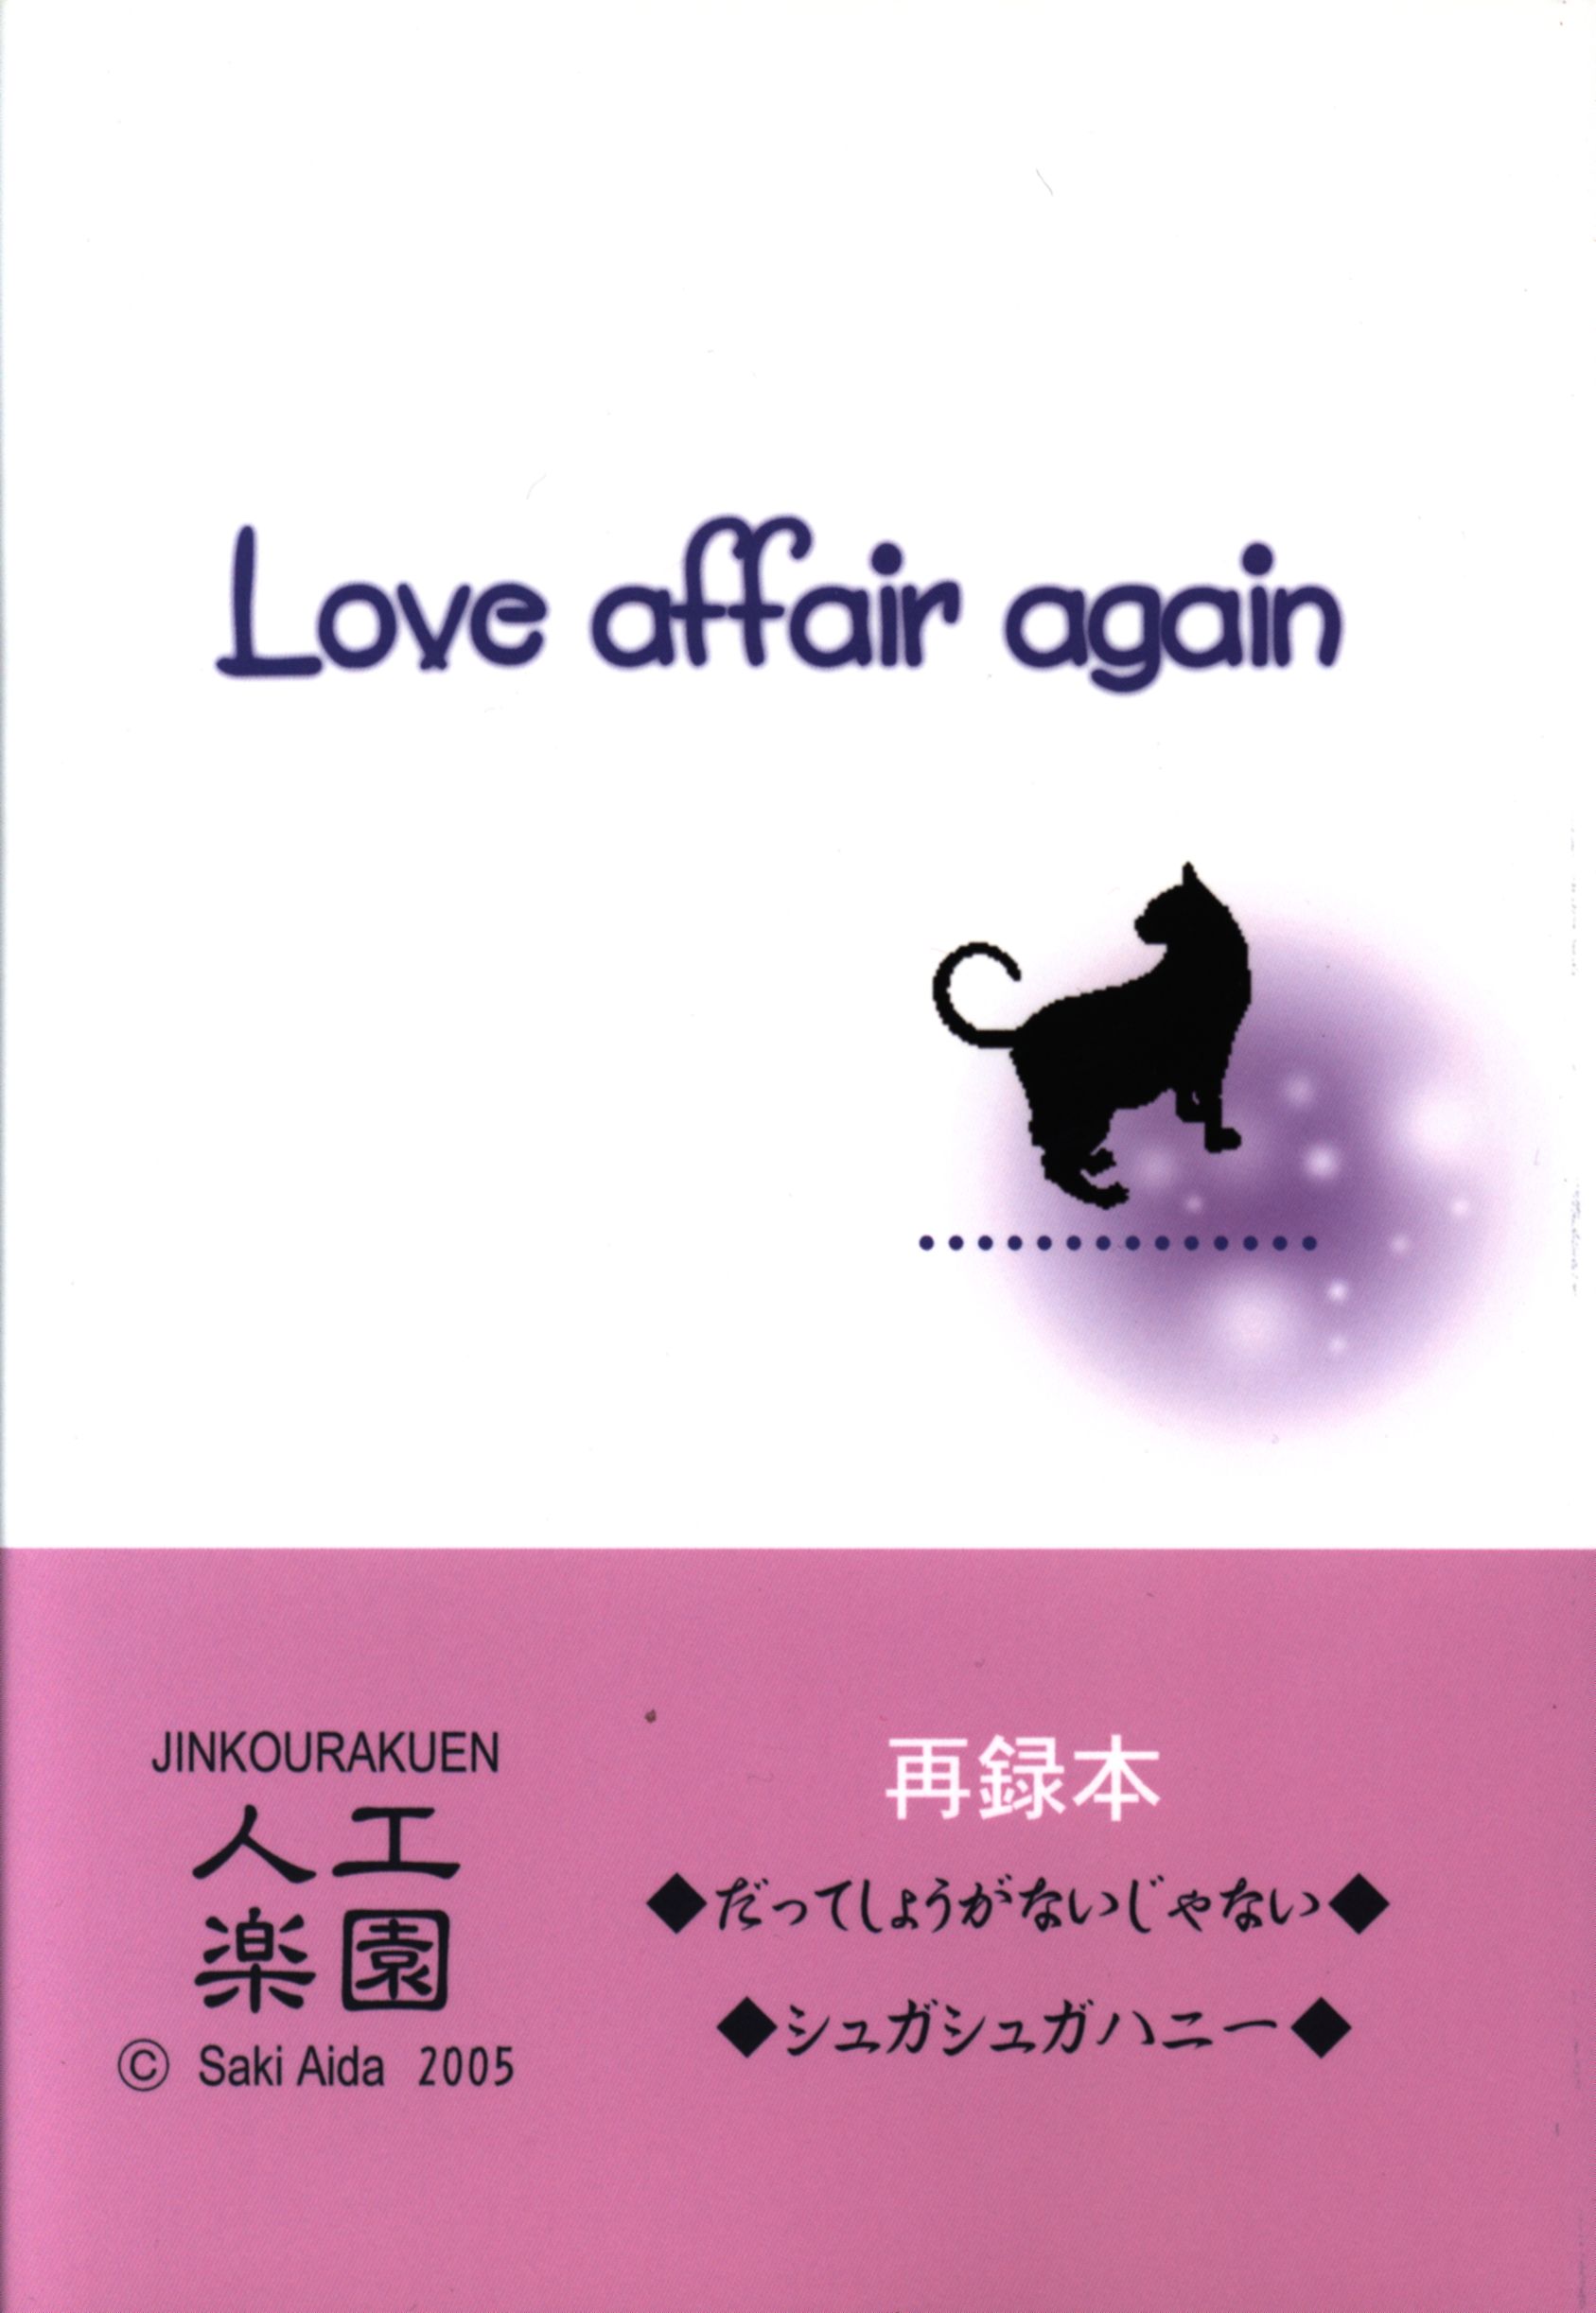 Artificial Paradise (Aida Saki) Love Affair Again ※ Has Damage